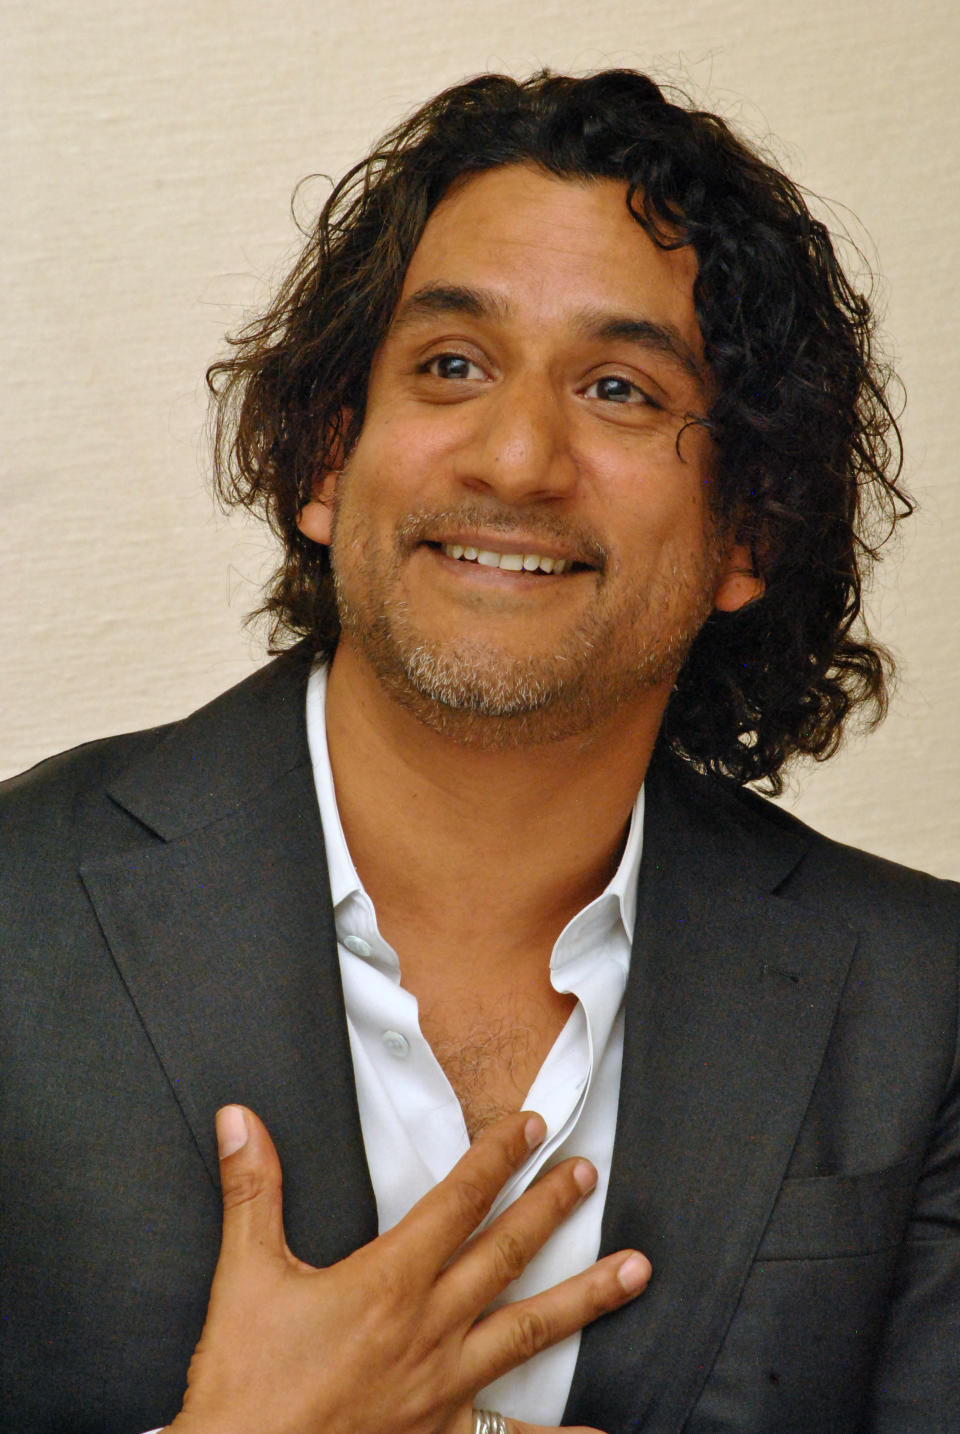 Gespielt wurde Sayid von Naveen Andrews, der nach dem Ende von "Lost" dem Format Serie treu geblieben ist. So spielte er in "Sindbad" und "Once Upon a Time in Wonderland" sowie in der von Kritikern hochgelobten Netflix-Serie "Sense8" mit. (Bild-Copyright: interTOPICS/Shooting Star/ddp Images)